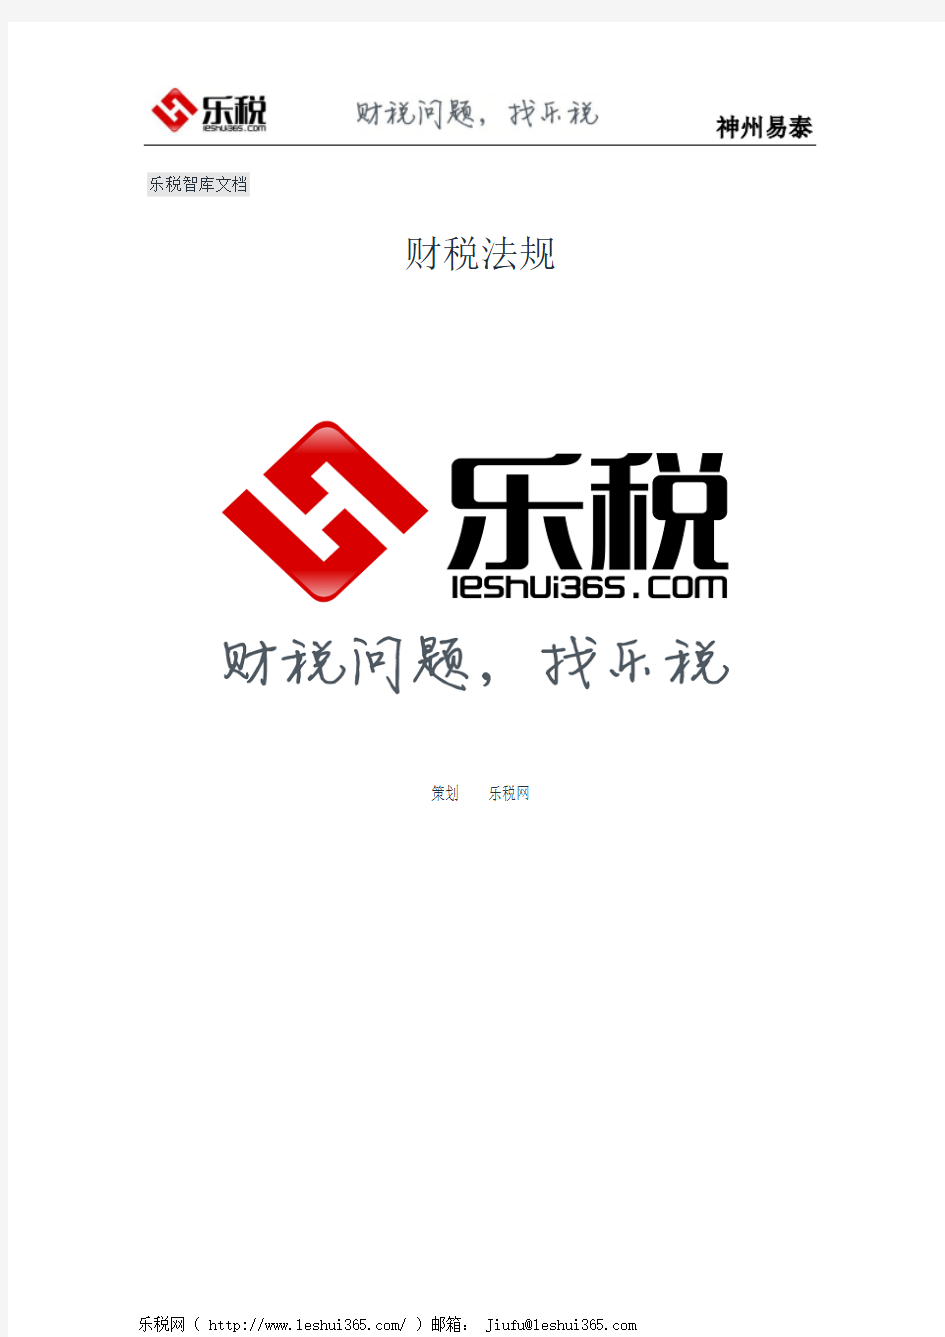 北京市地方税务局关于规范普通发票开具问题的通知